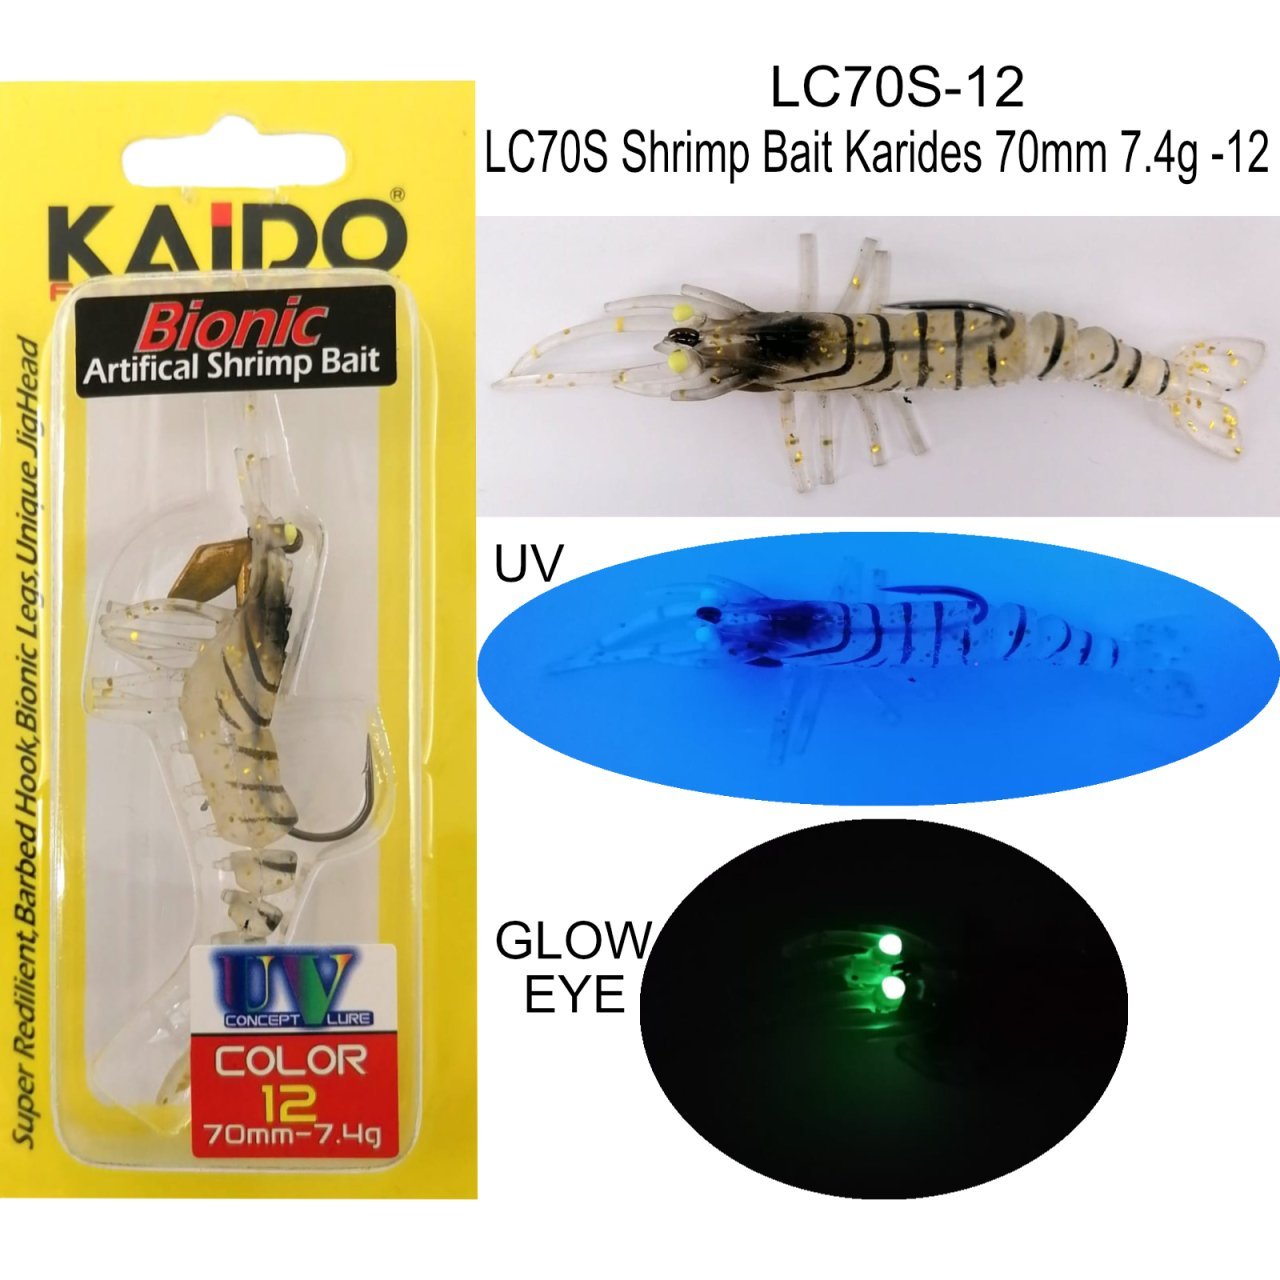 LC70S Shrimp Bait Karides 70mm 7.4gr 12